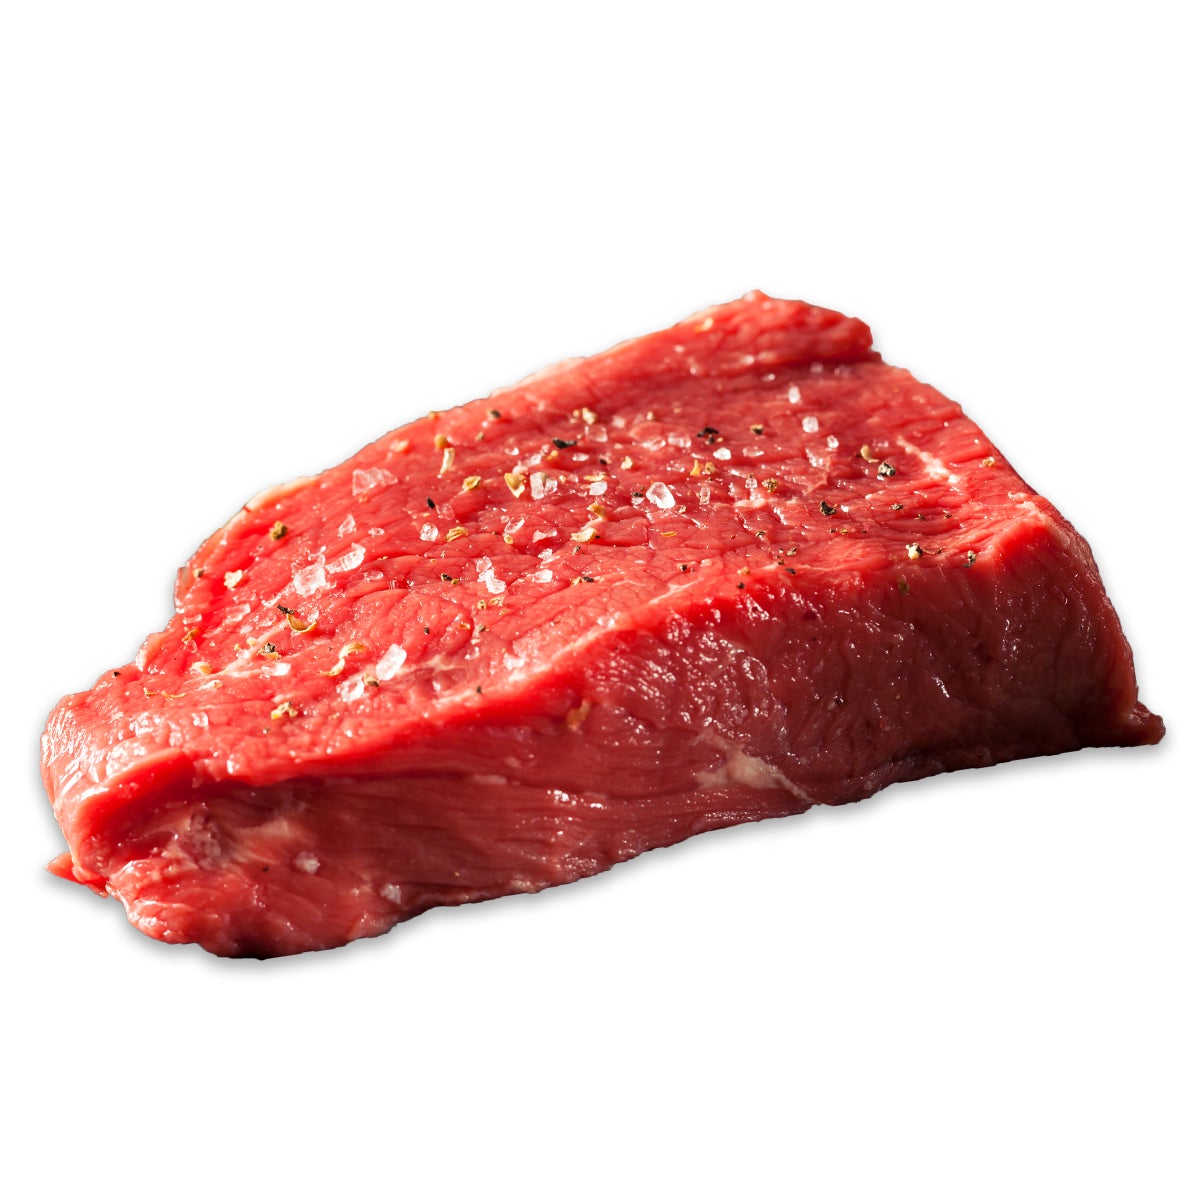 Steak Rinder,Hüfte 250g